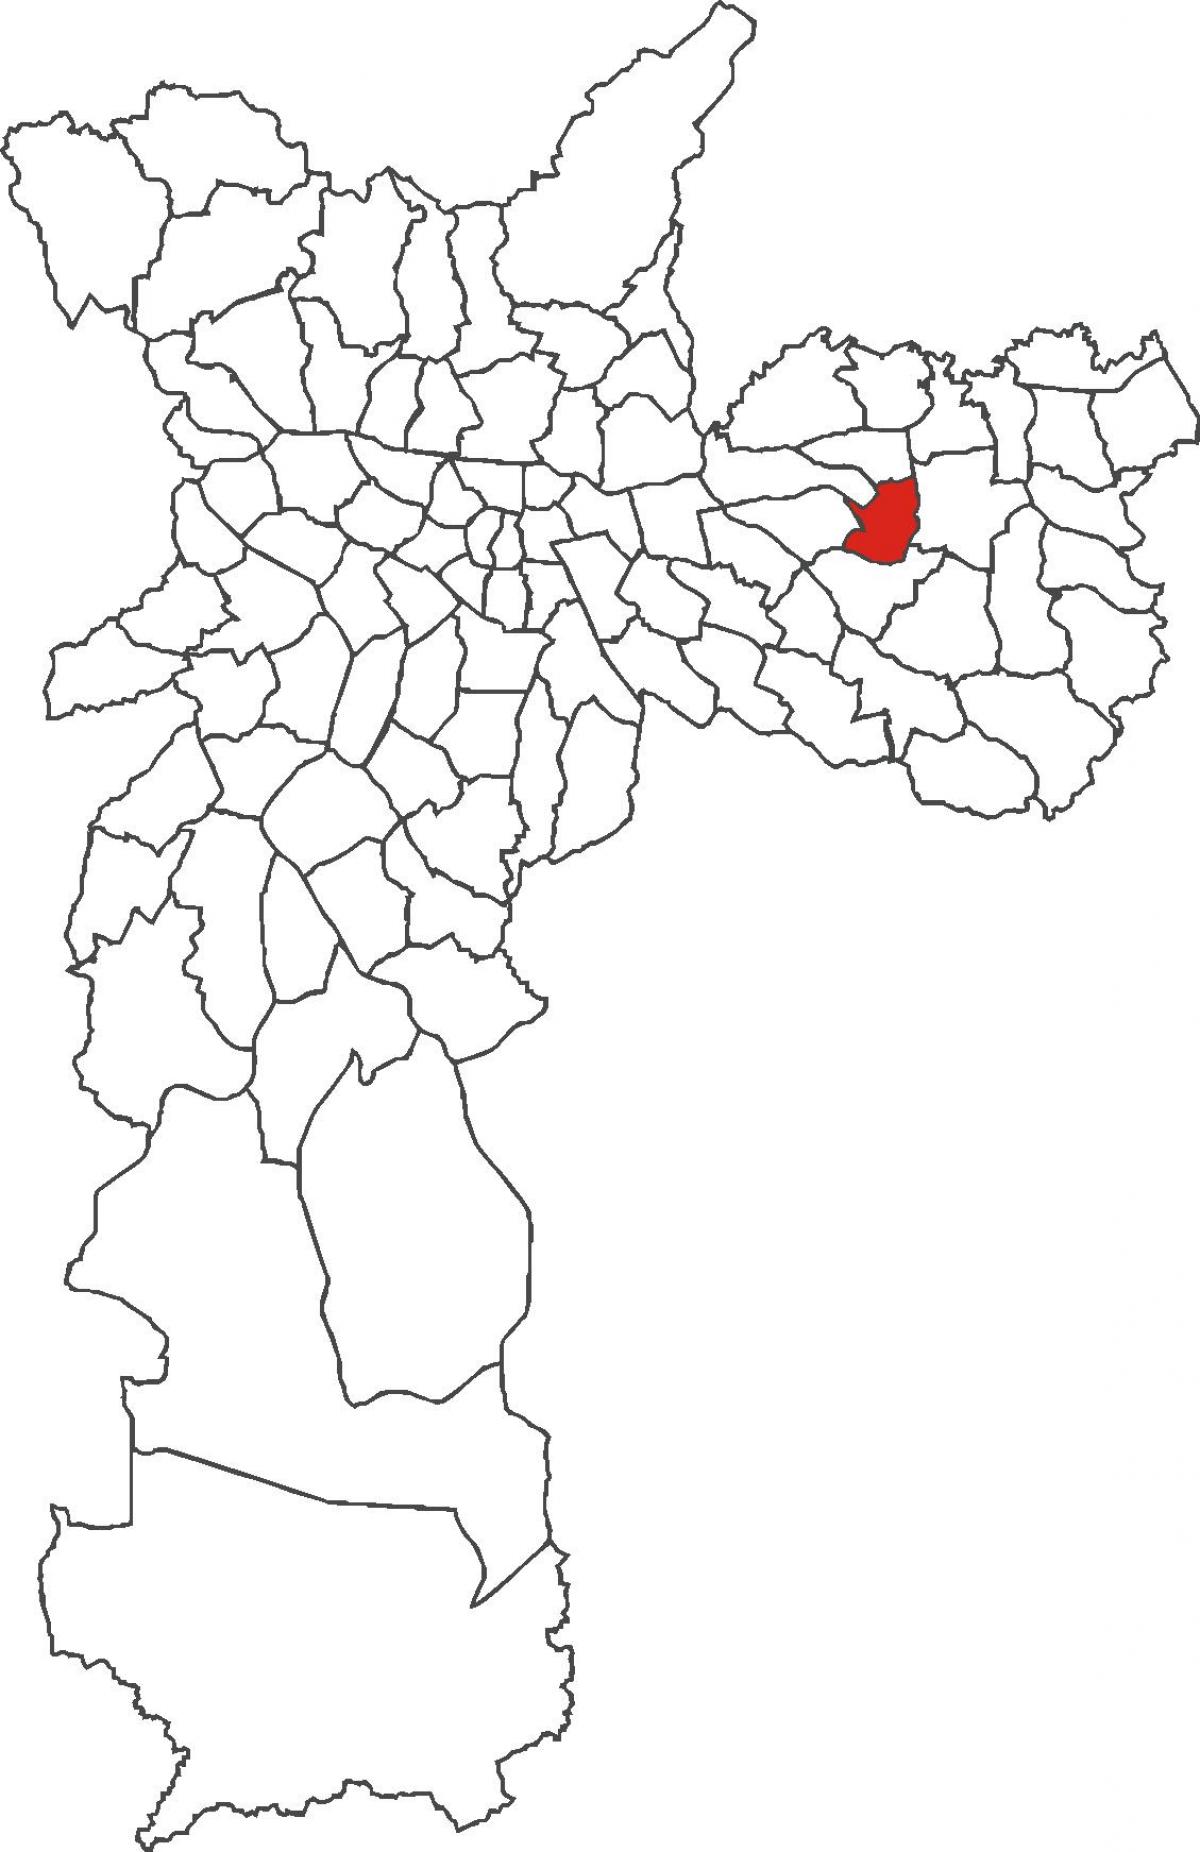 Kart av Artur Alvim-distriktet